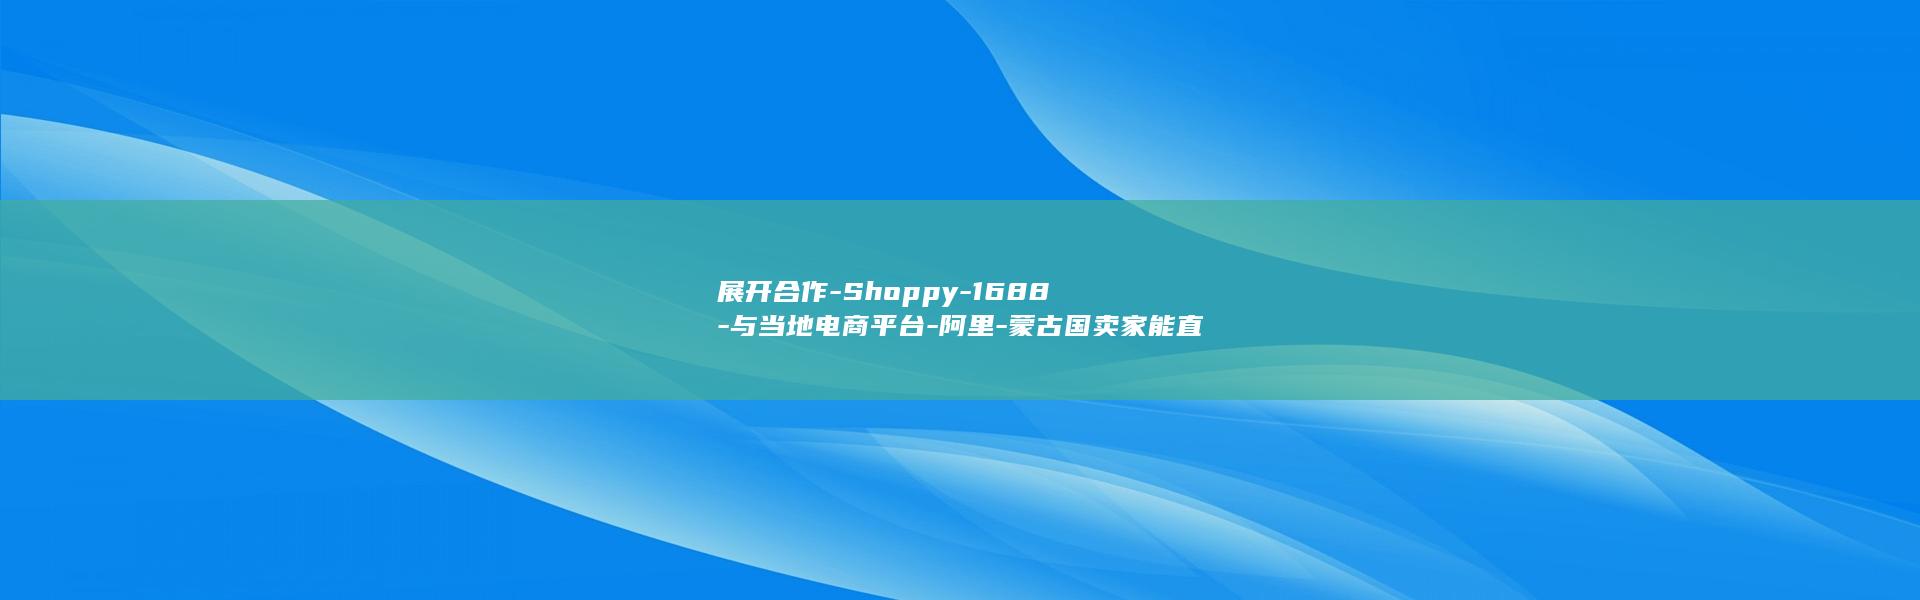 展开合作-Shoppy-1688-与当地电商平台-阿里-蒙古国卖家能直接采购中国货源了